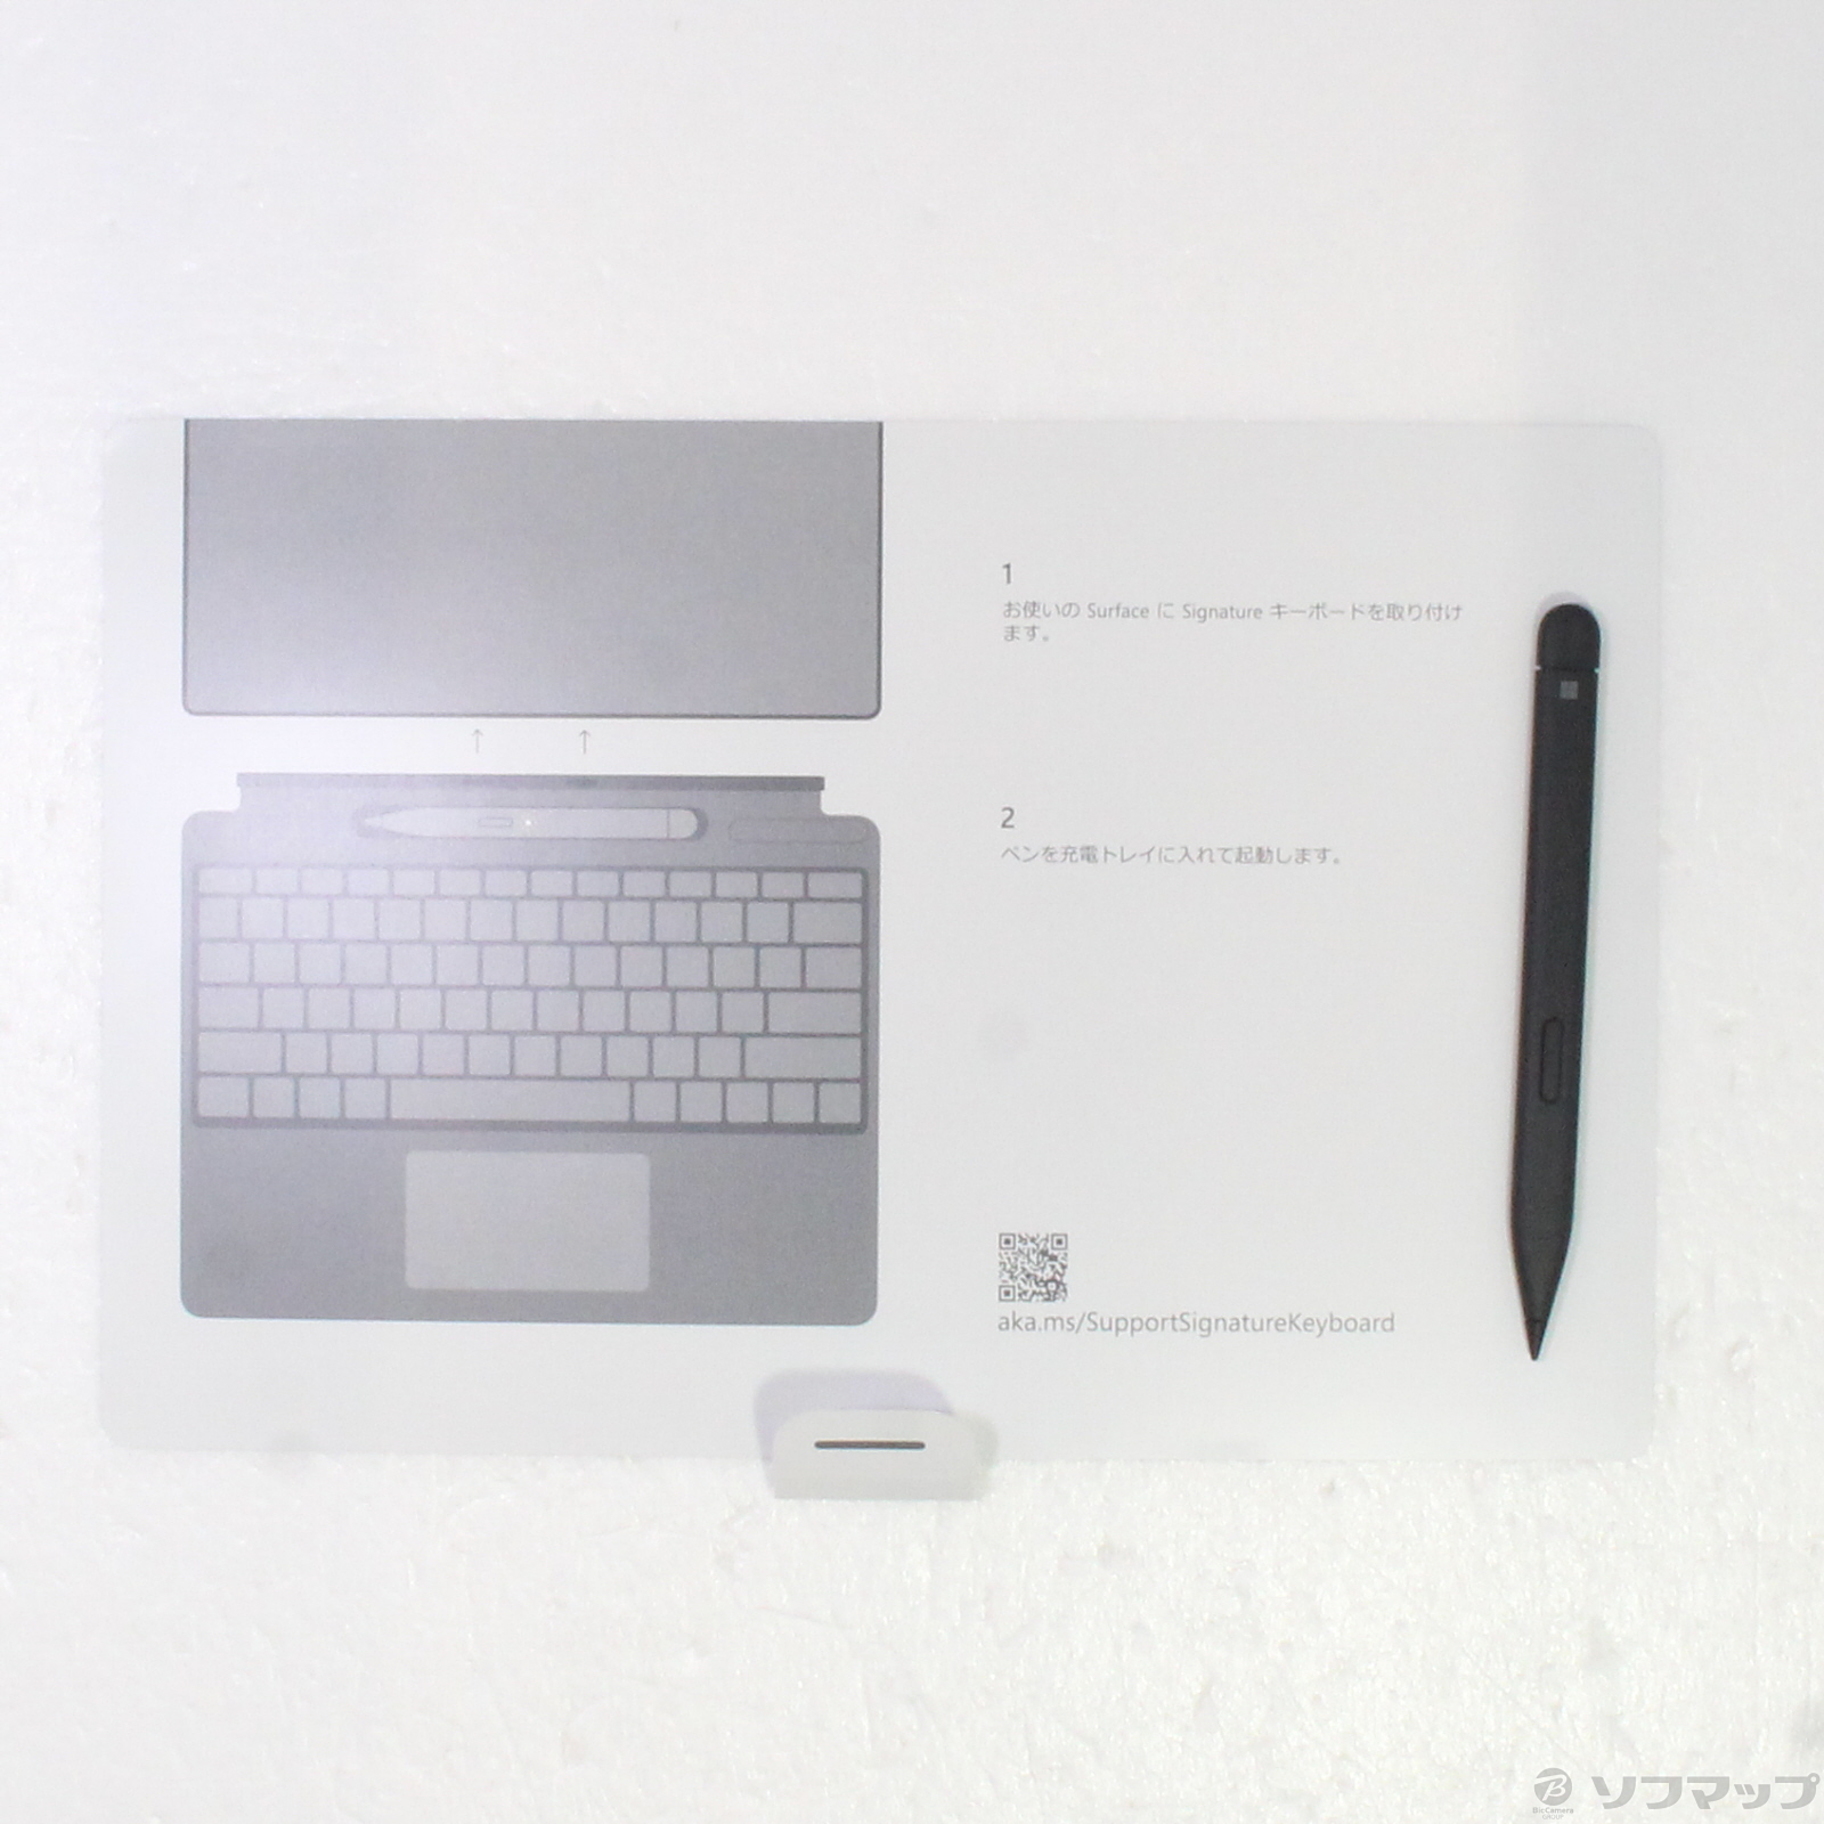 20869円 超安い品質 マイクロソフト 8X6-00059 Surface Pro スリムペン2付き Signatureキーボード アイスブルー